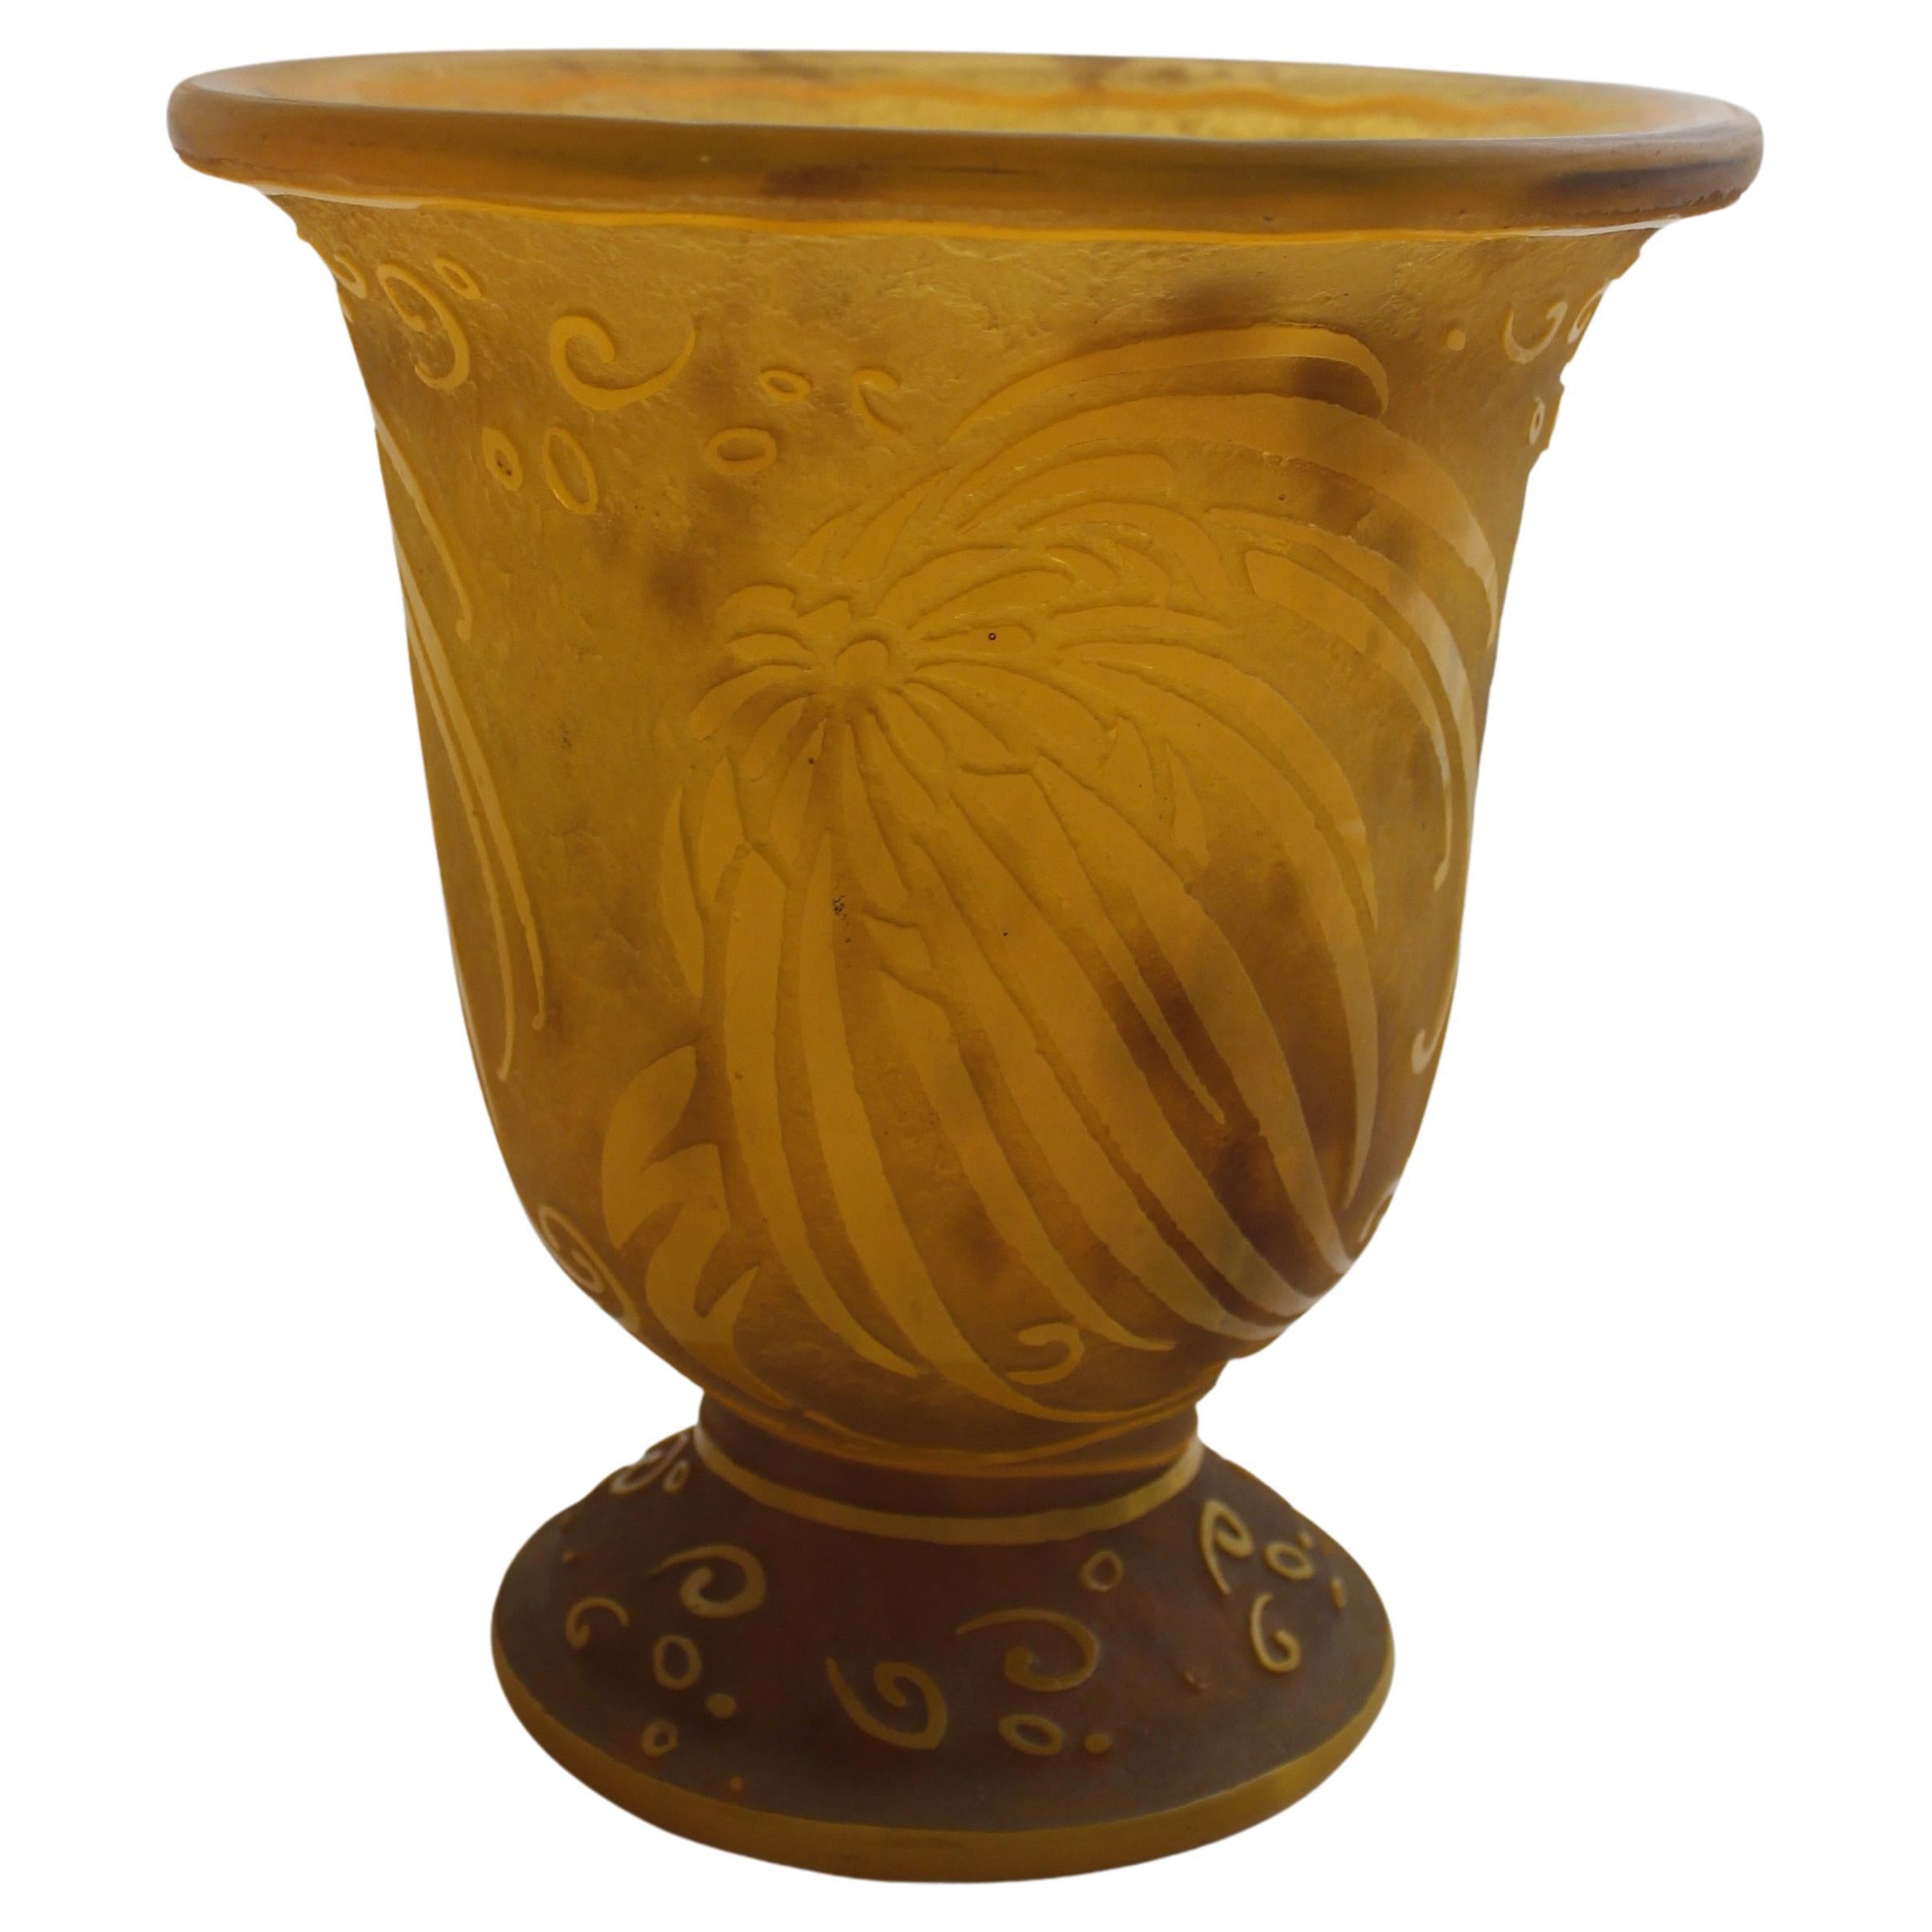 Vase, signiert: Daum Nancy, Frankreich, 1924